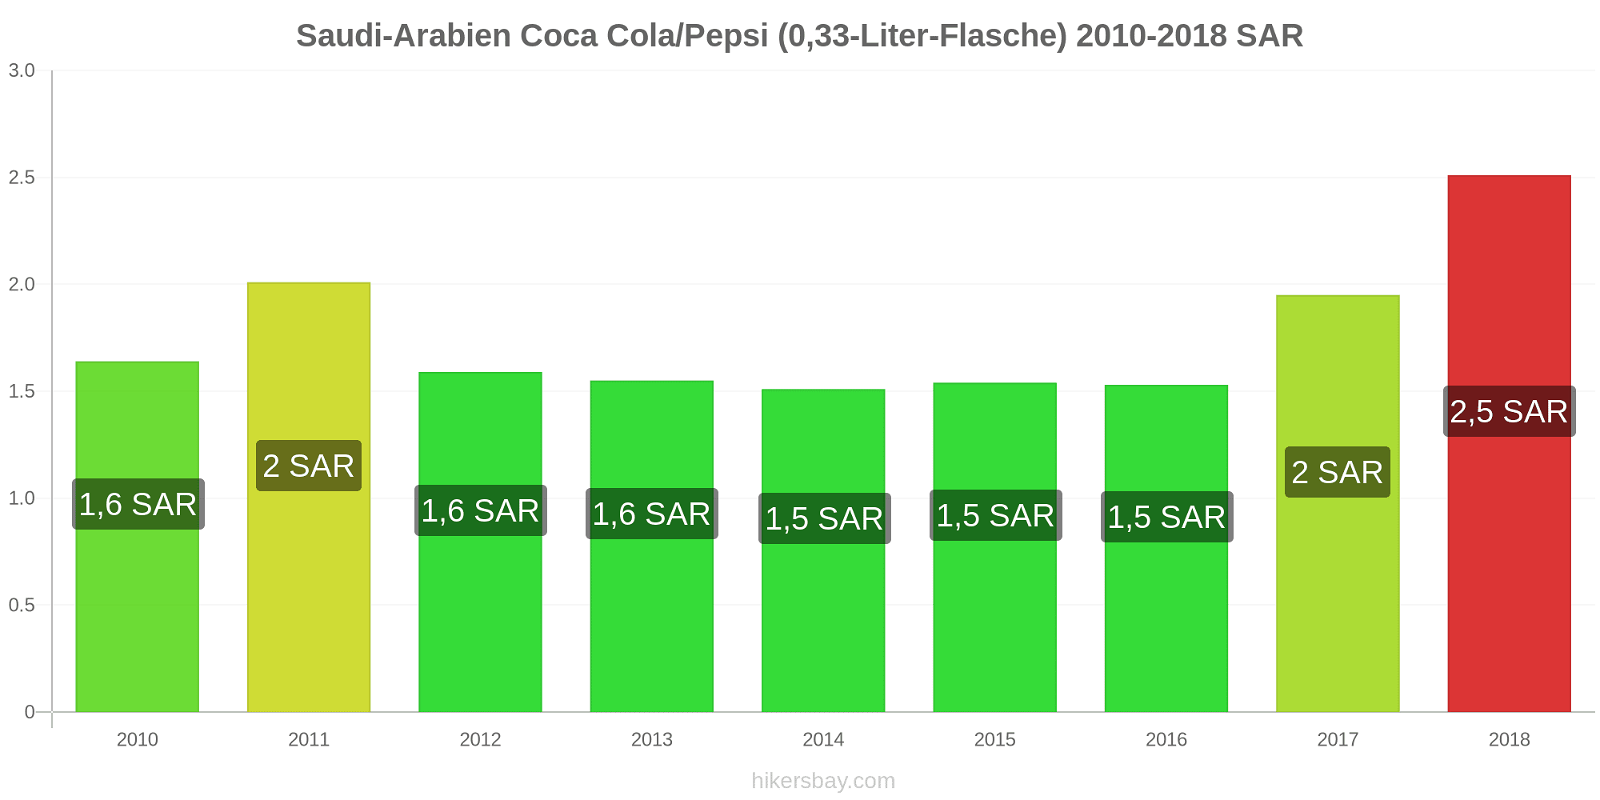 Saudi-Arabien Preisänderungen Coke/Pepsi (0,33-Liter-Flasche) hikersbay.com